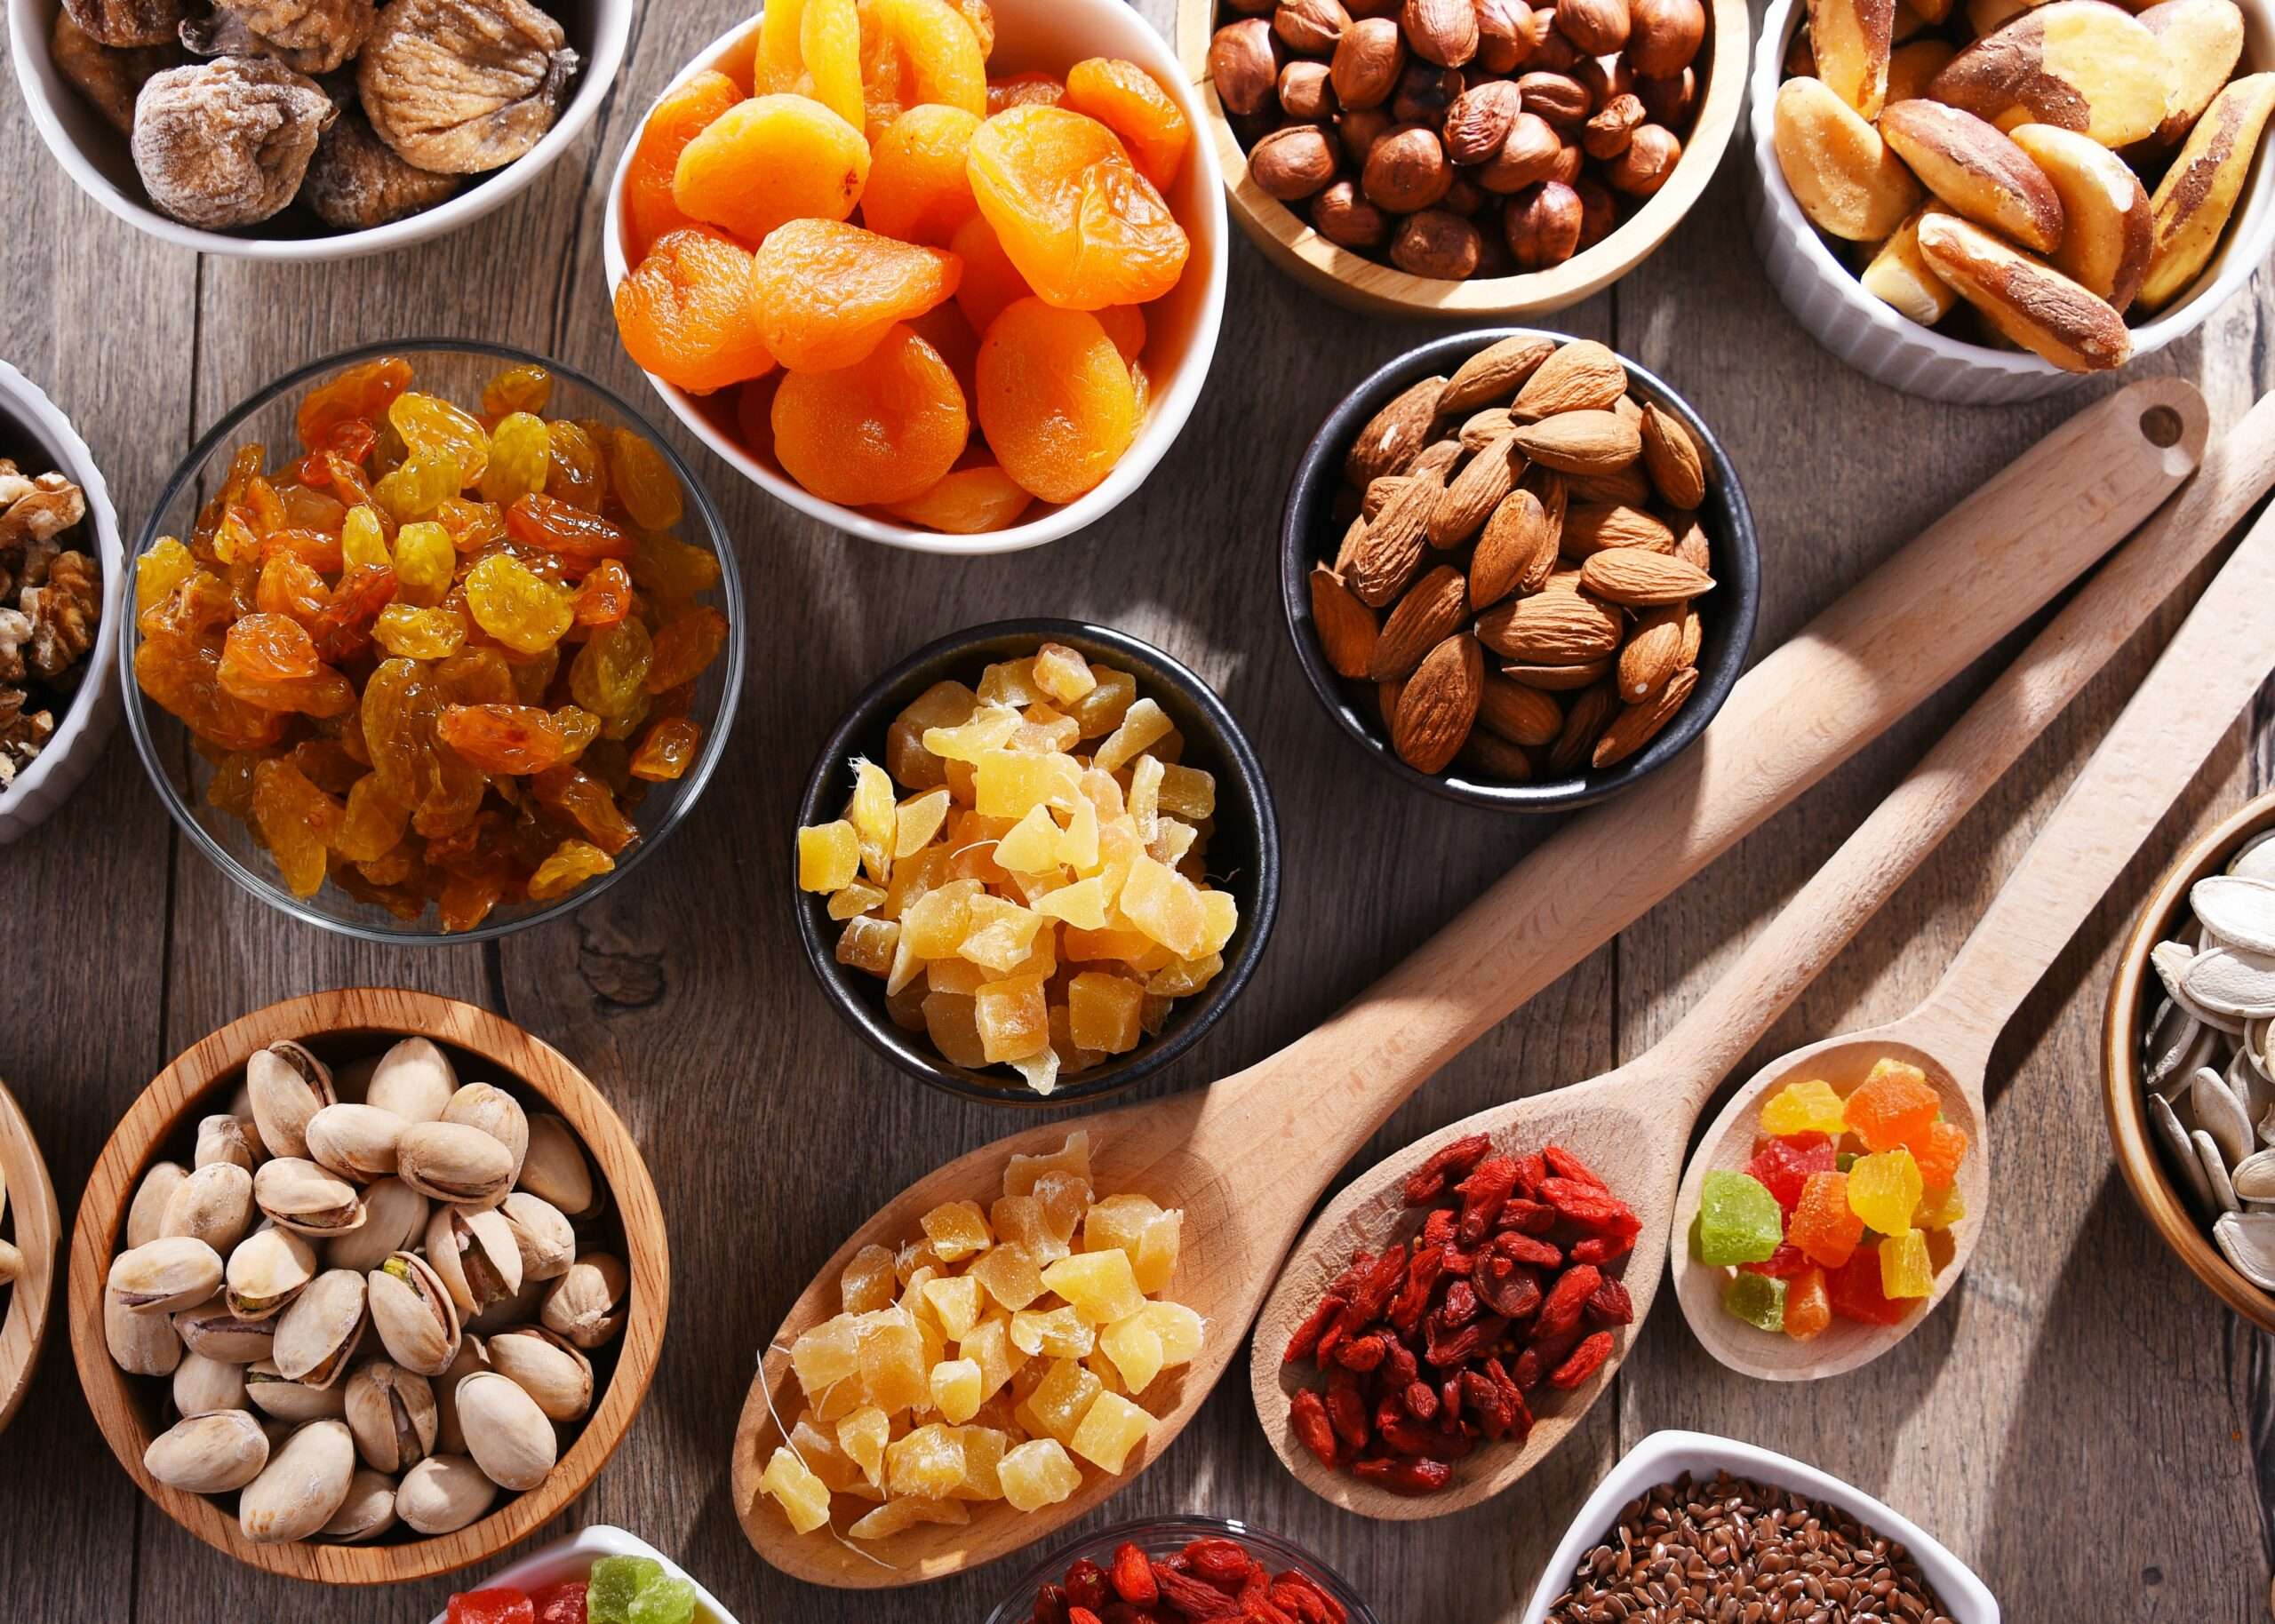 Une photo de différents types de fruits secs, tels que des amandes, des noix de cajou, des noix et des dattes, disposés sur une assiette.